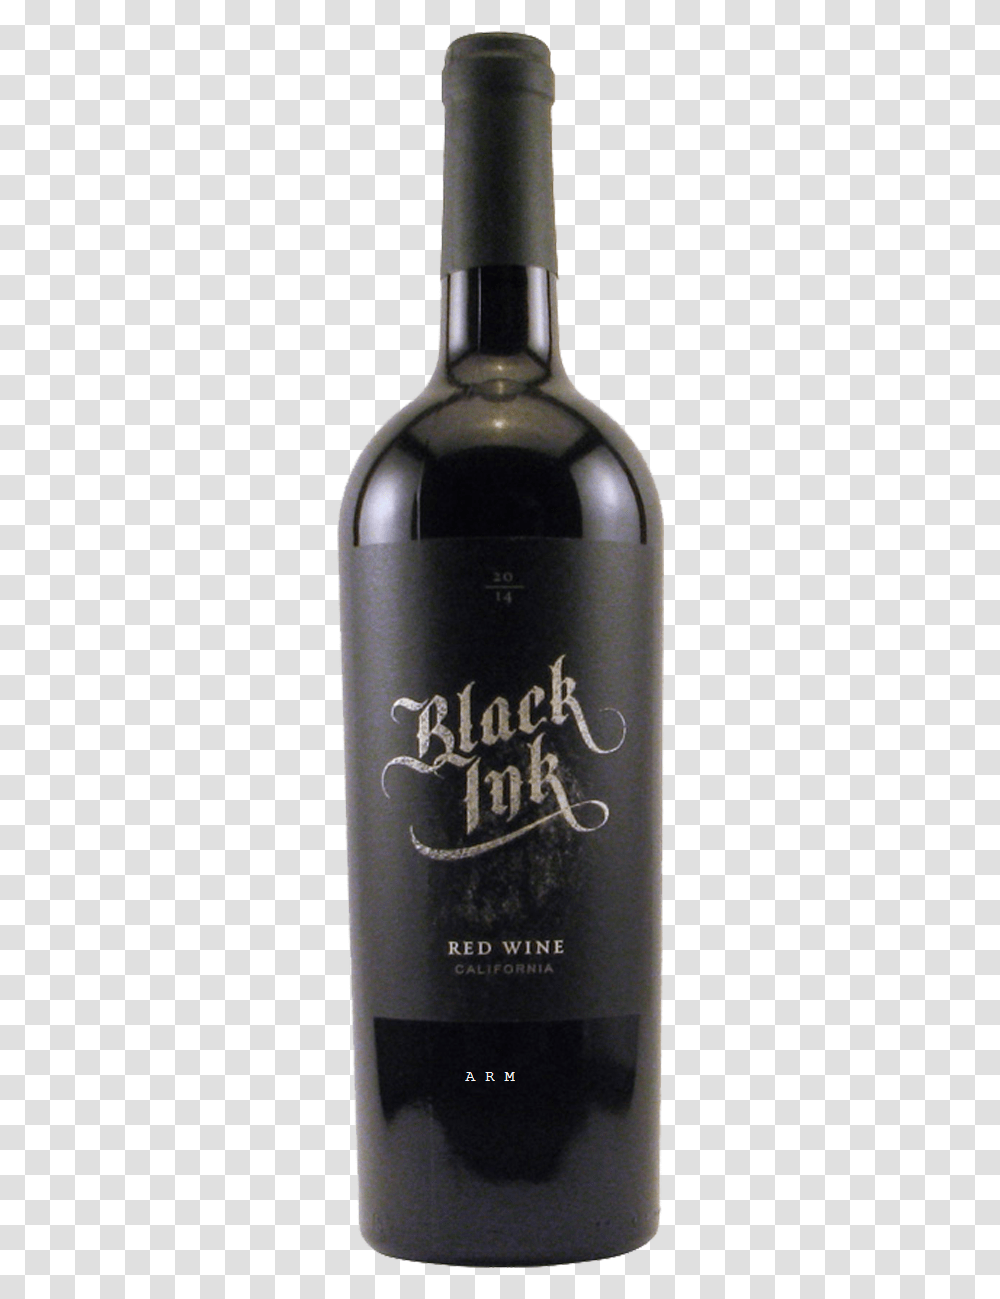 Black Ink, Beer, Alcohol, Beverage, Bottle Transparent Png